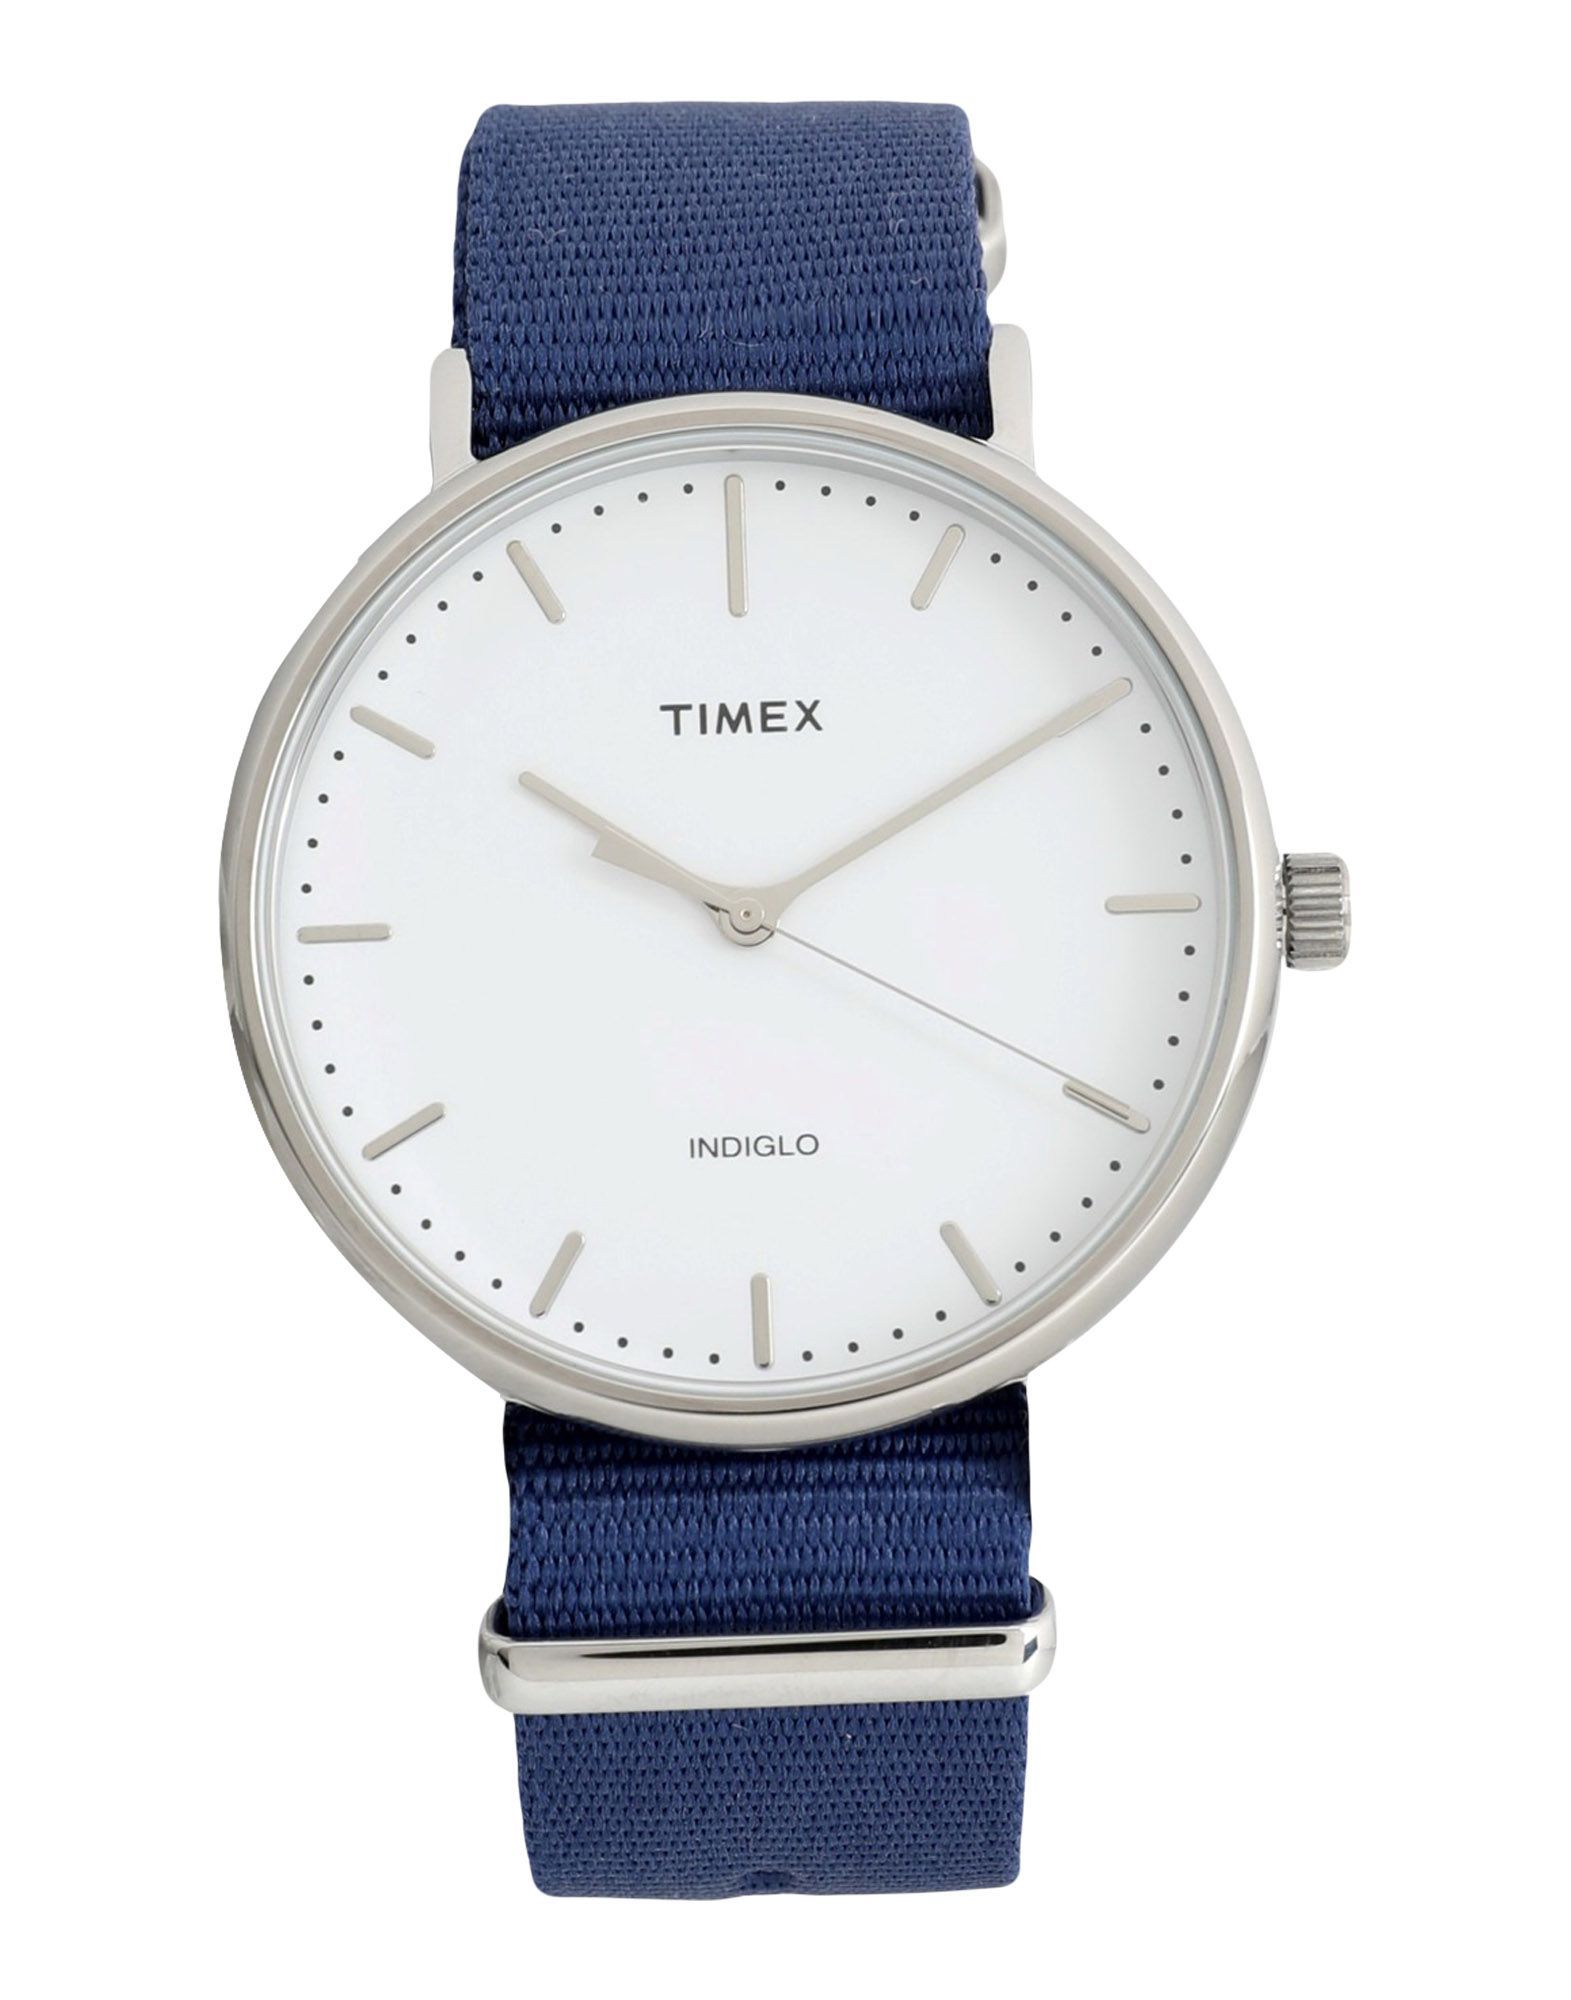 TIMEX Wrist watches | YOOX (US)